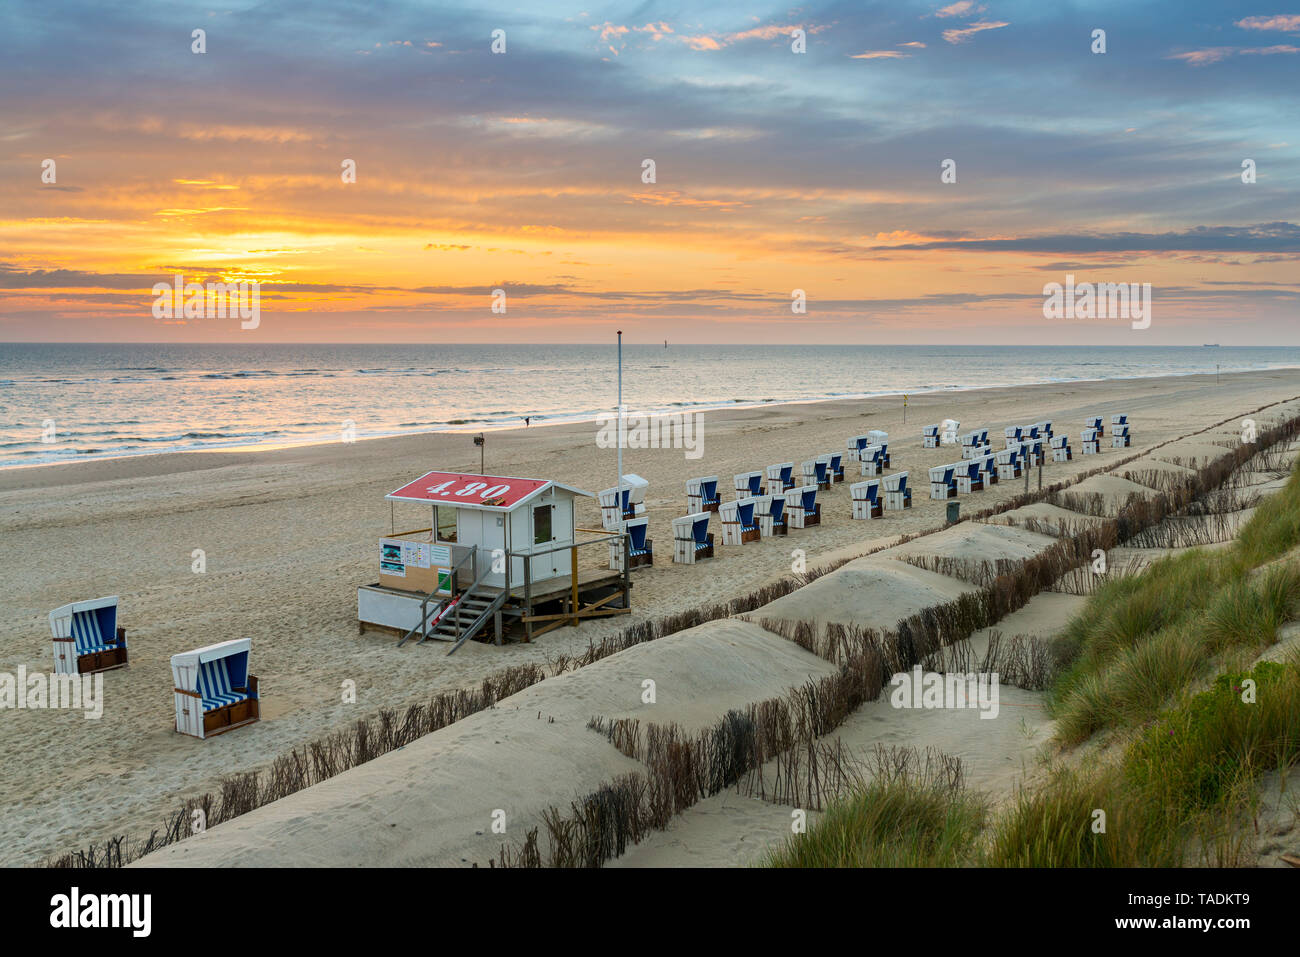 Allemagne, Sylt, Mer du Nord, plage de sable avec chaises de plage à capuchon dans le coucher du soleil Banque D'Images